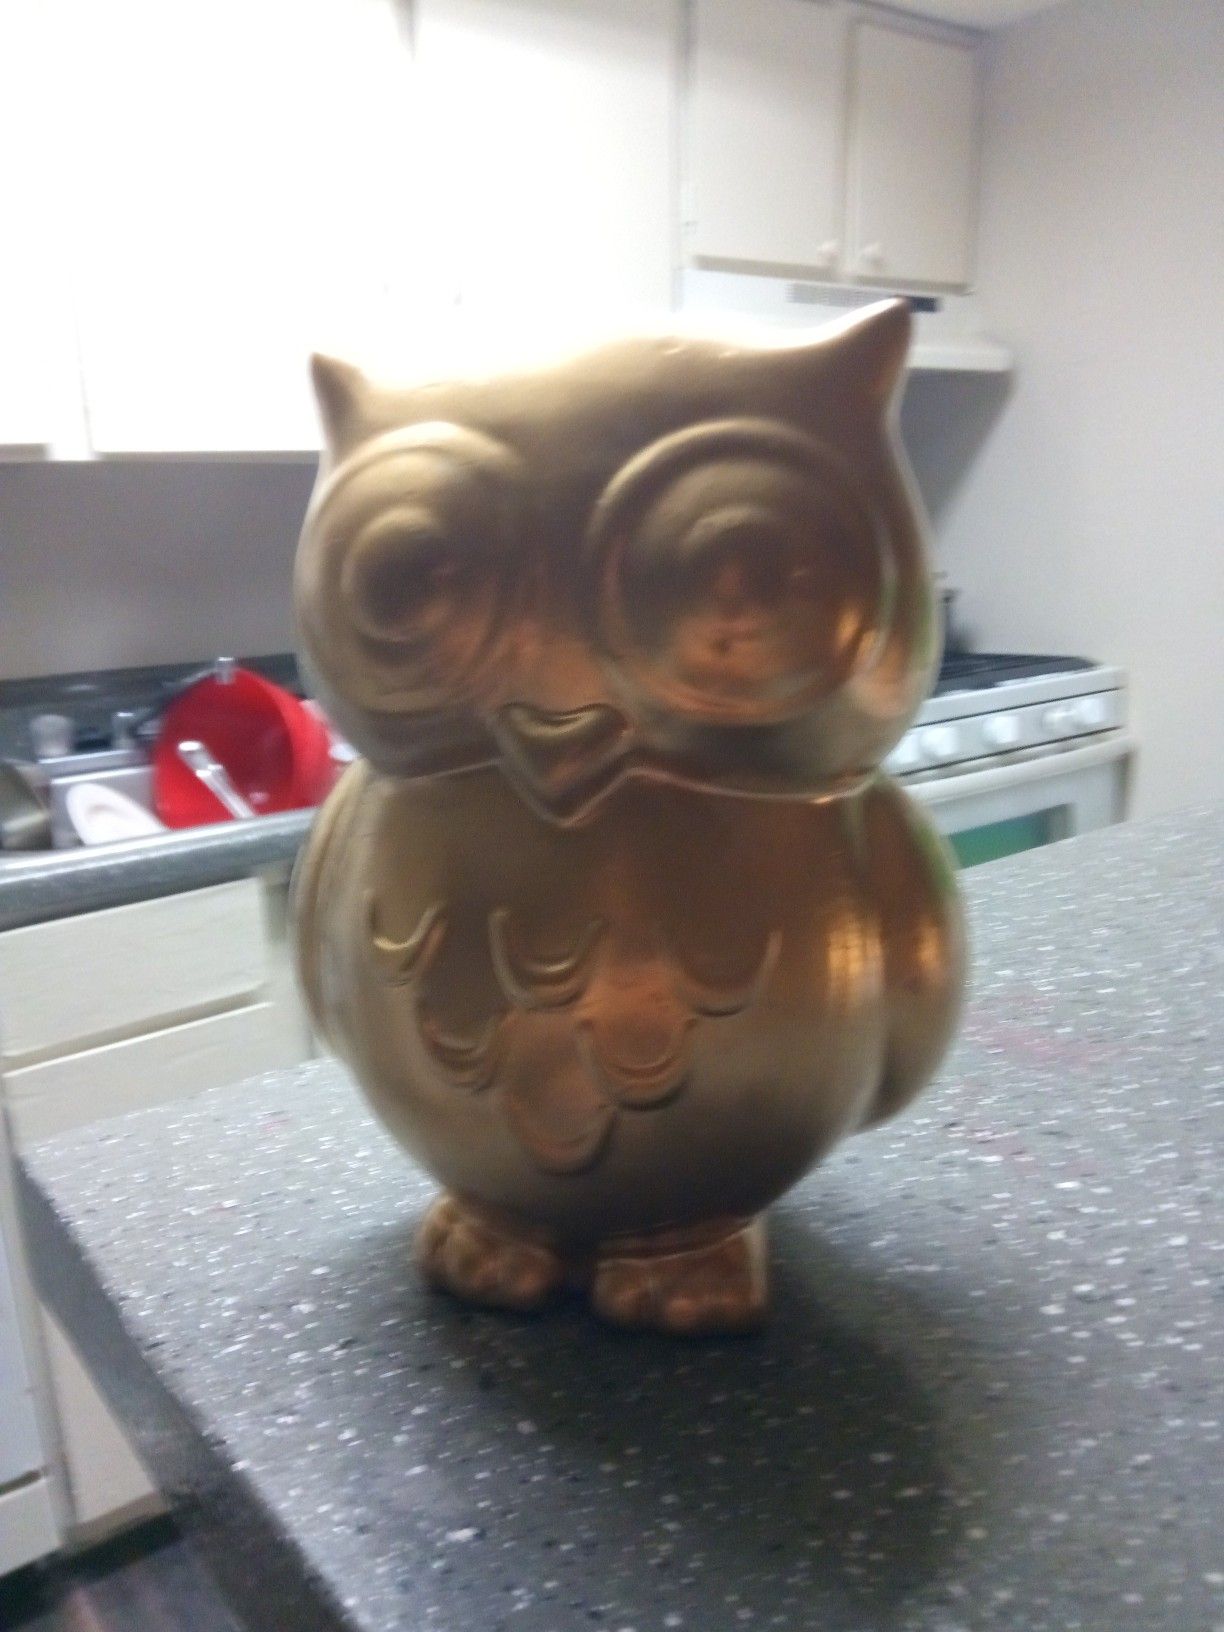 Gold owl ceramic figurine